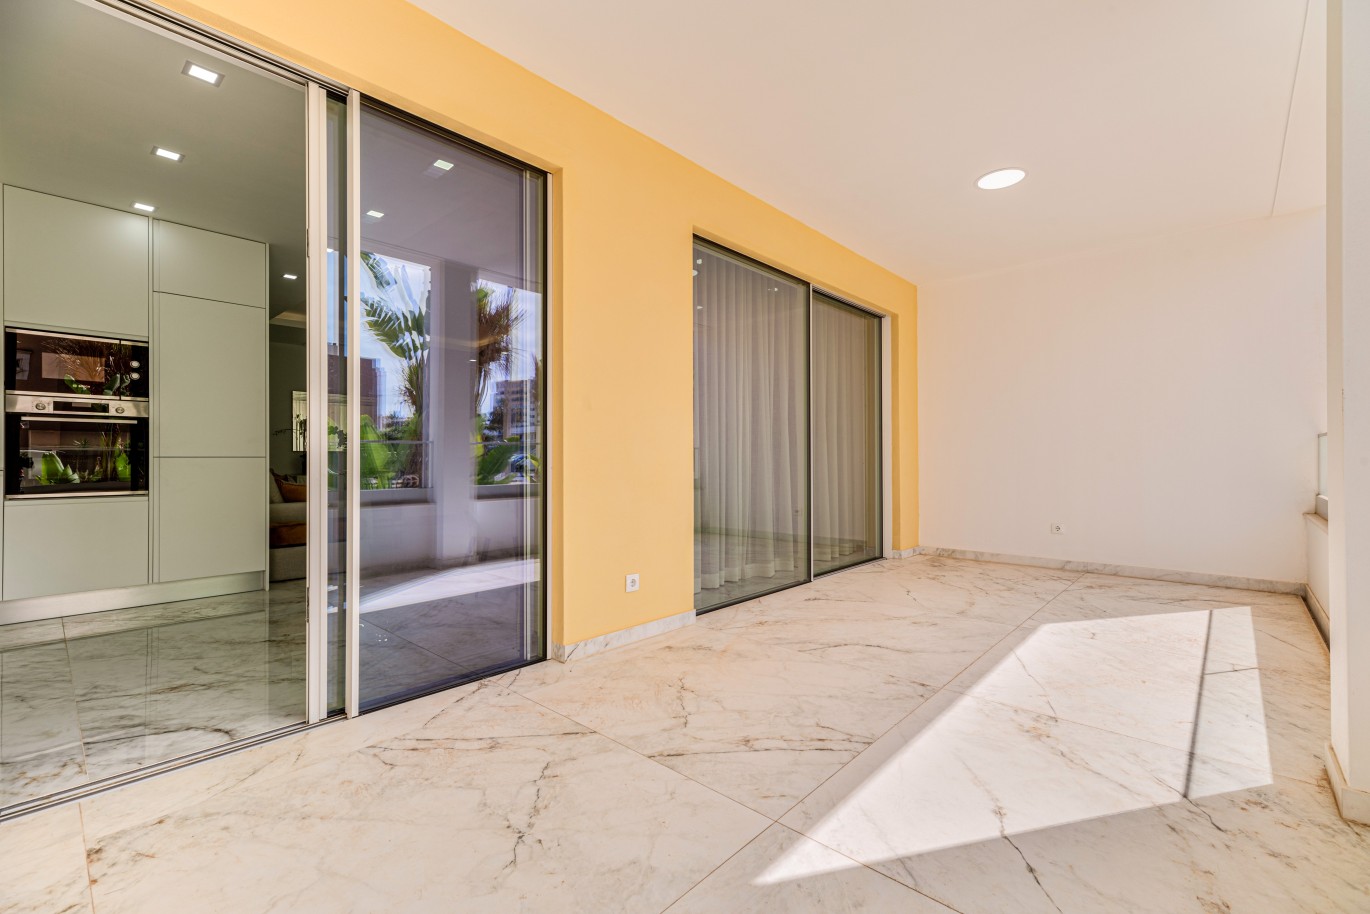 Verkauf einer Wohnung im Bau, mit Terrasse, Lagos, Algarve, Portugal_238539